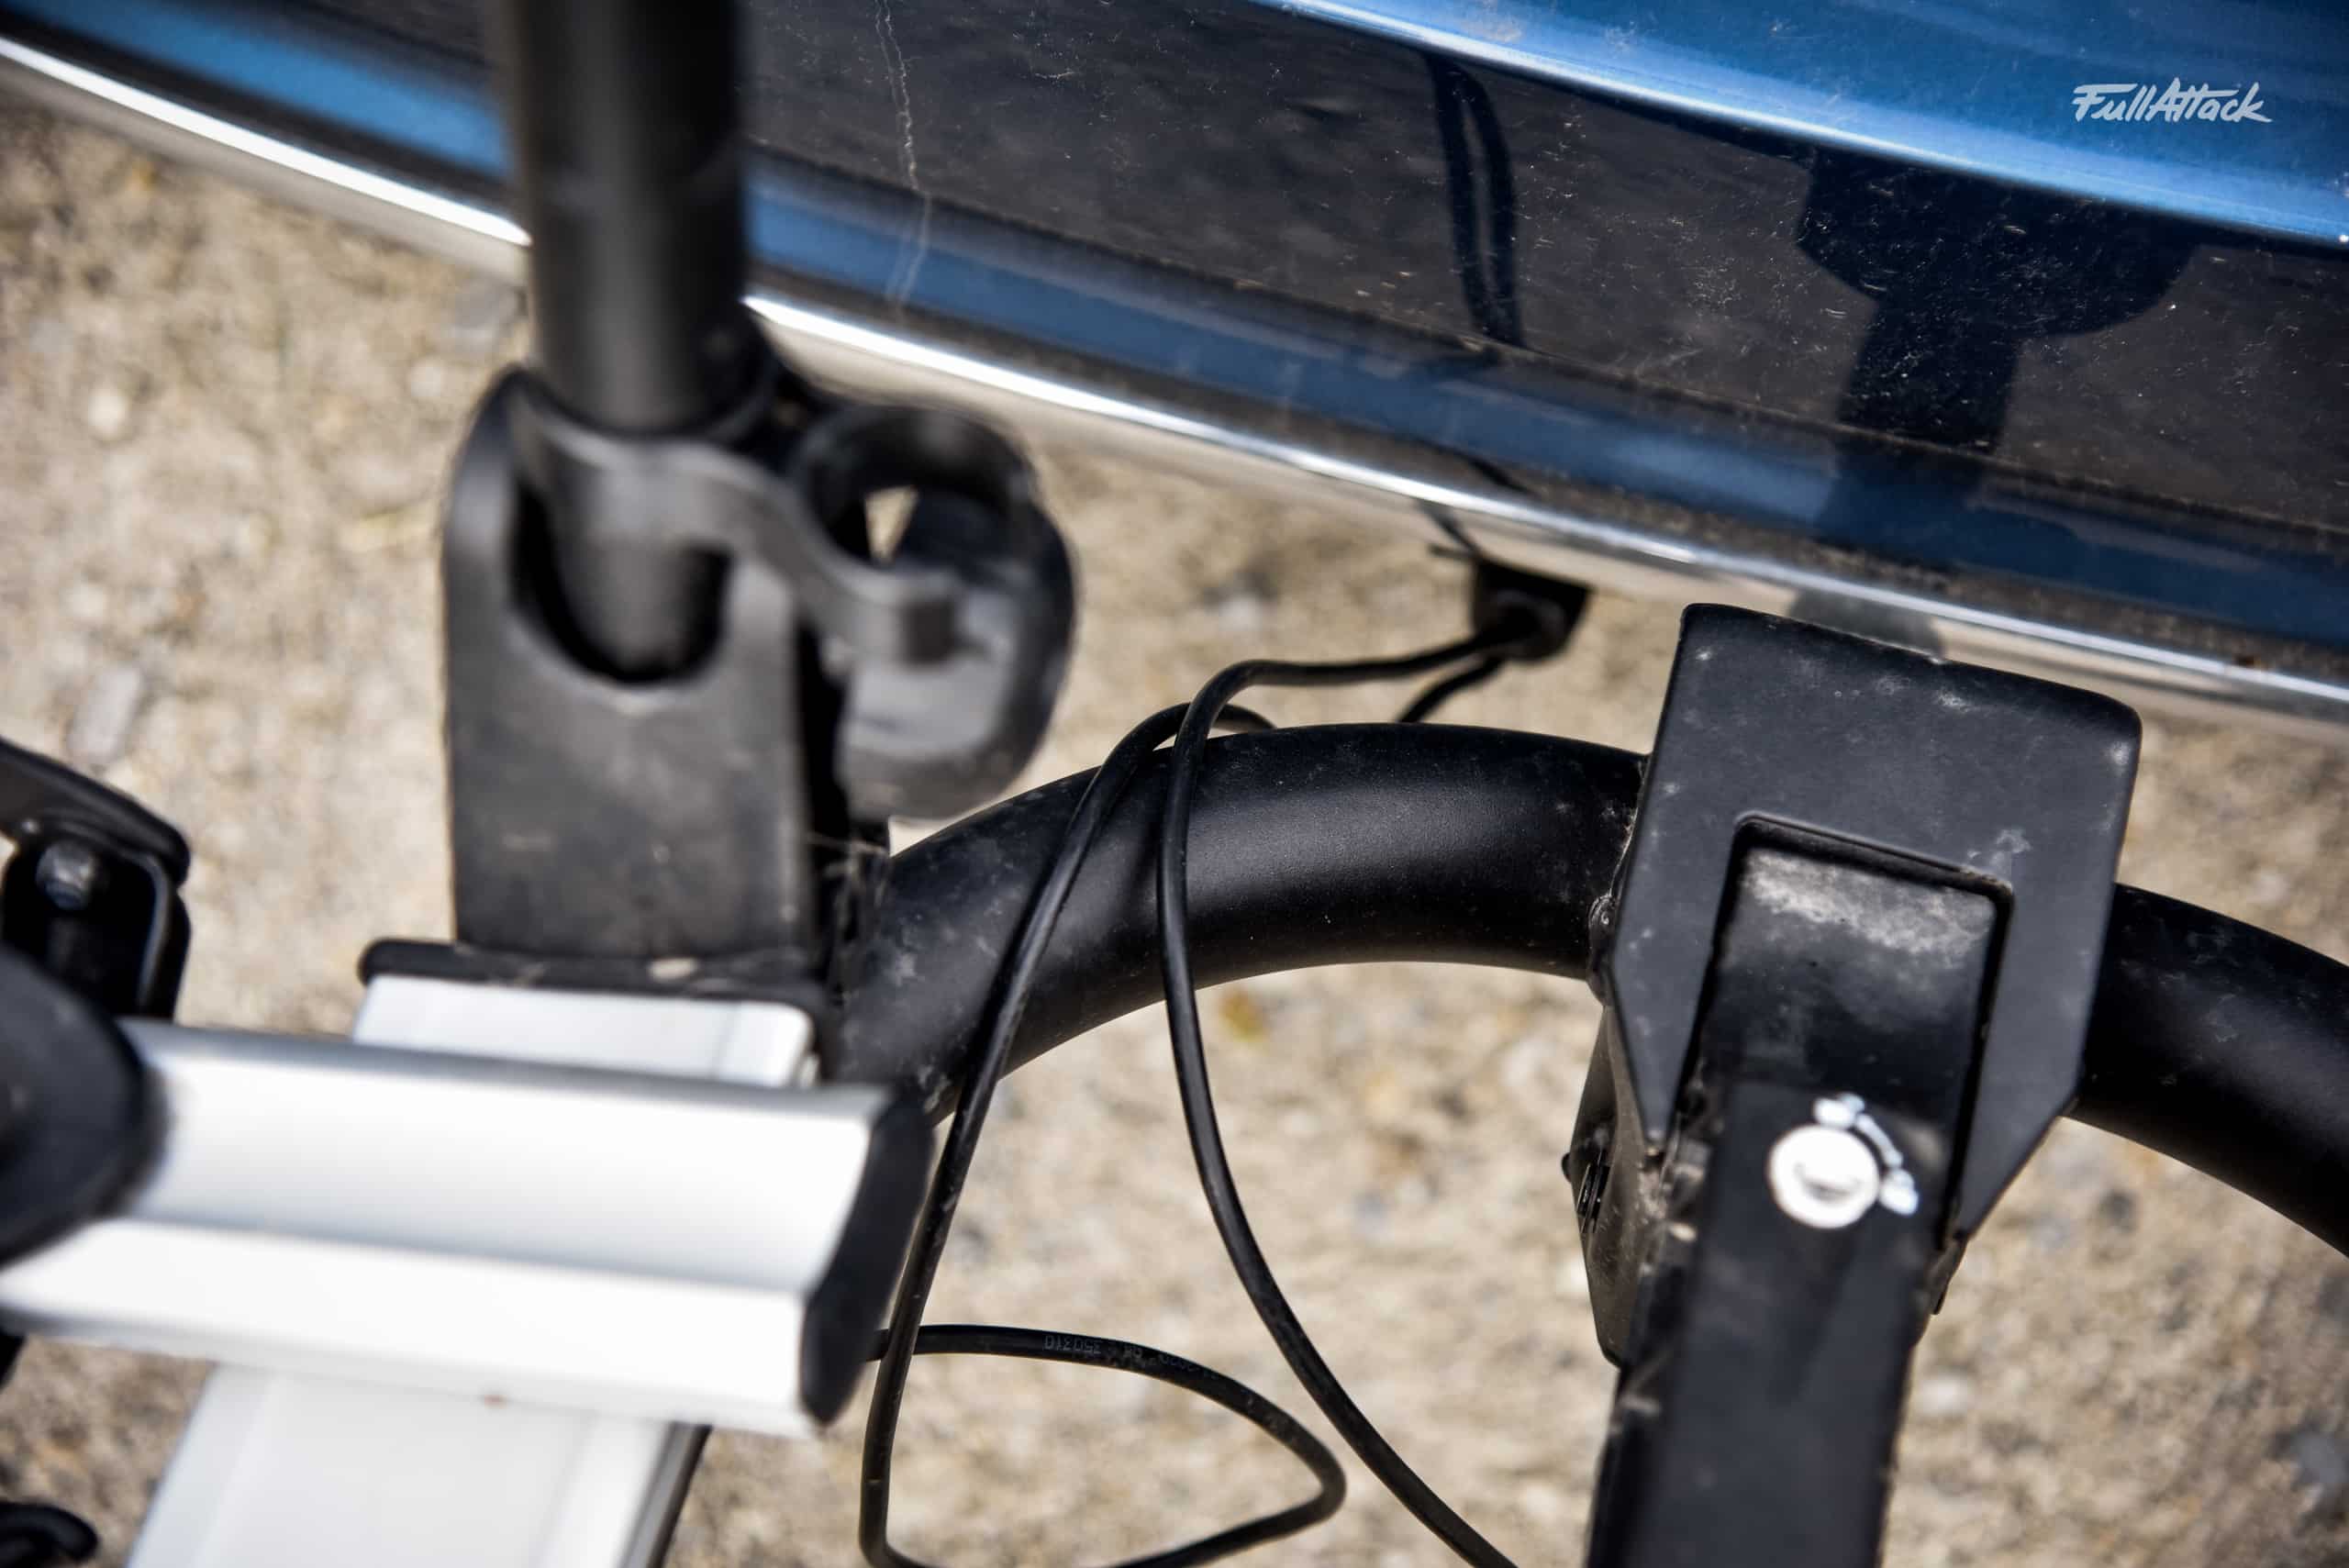 Porte-vélo électrique pas cher